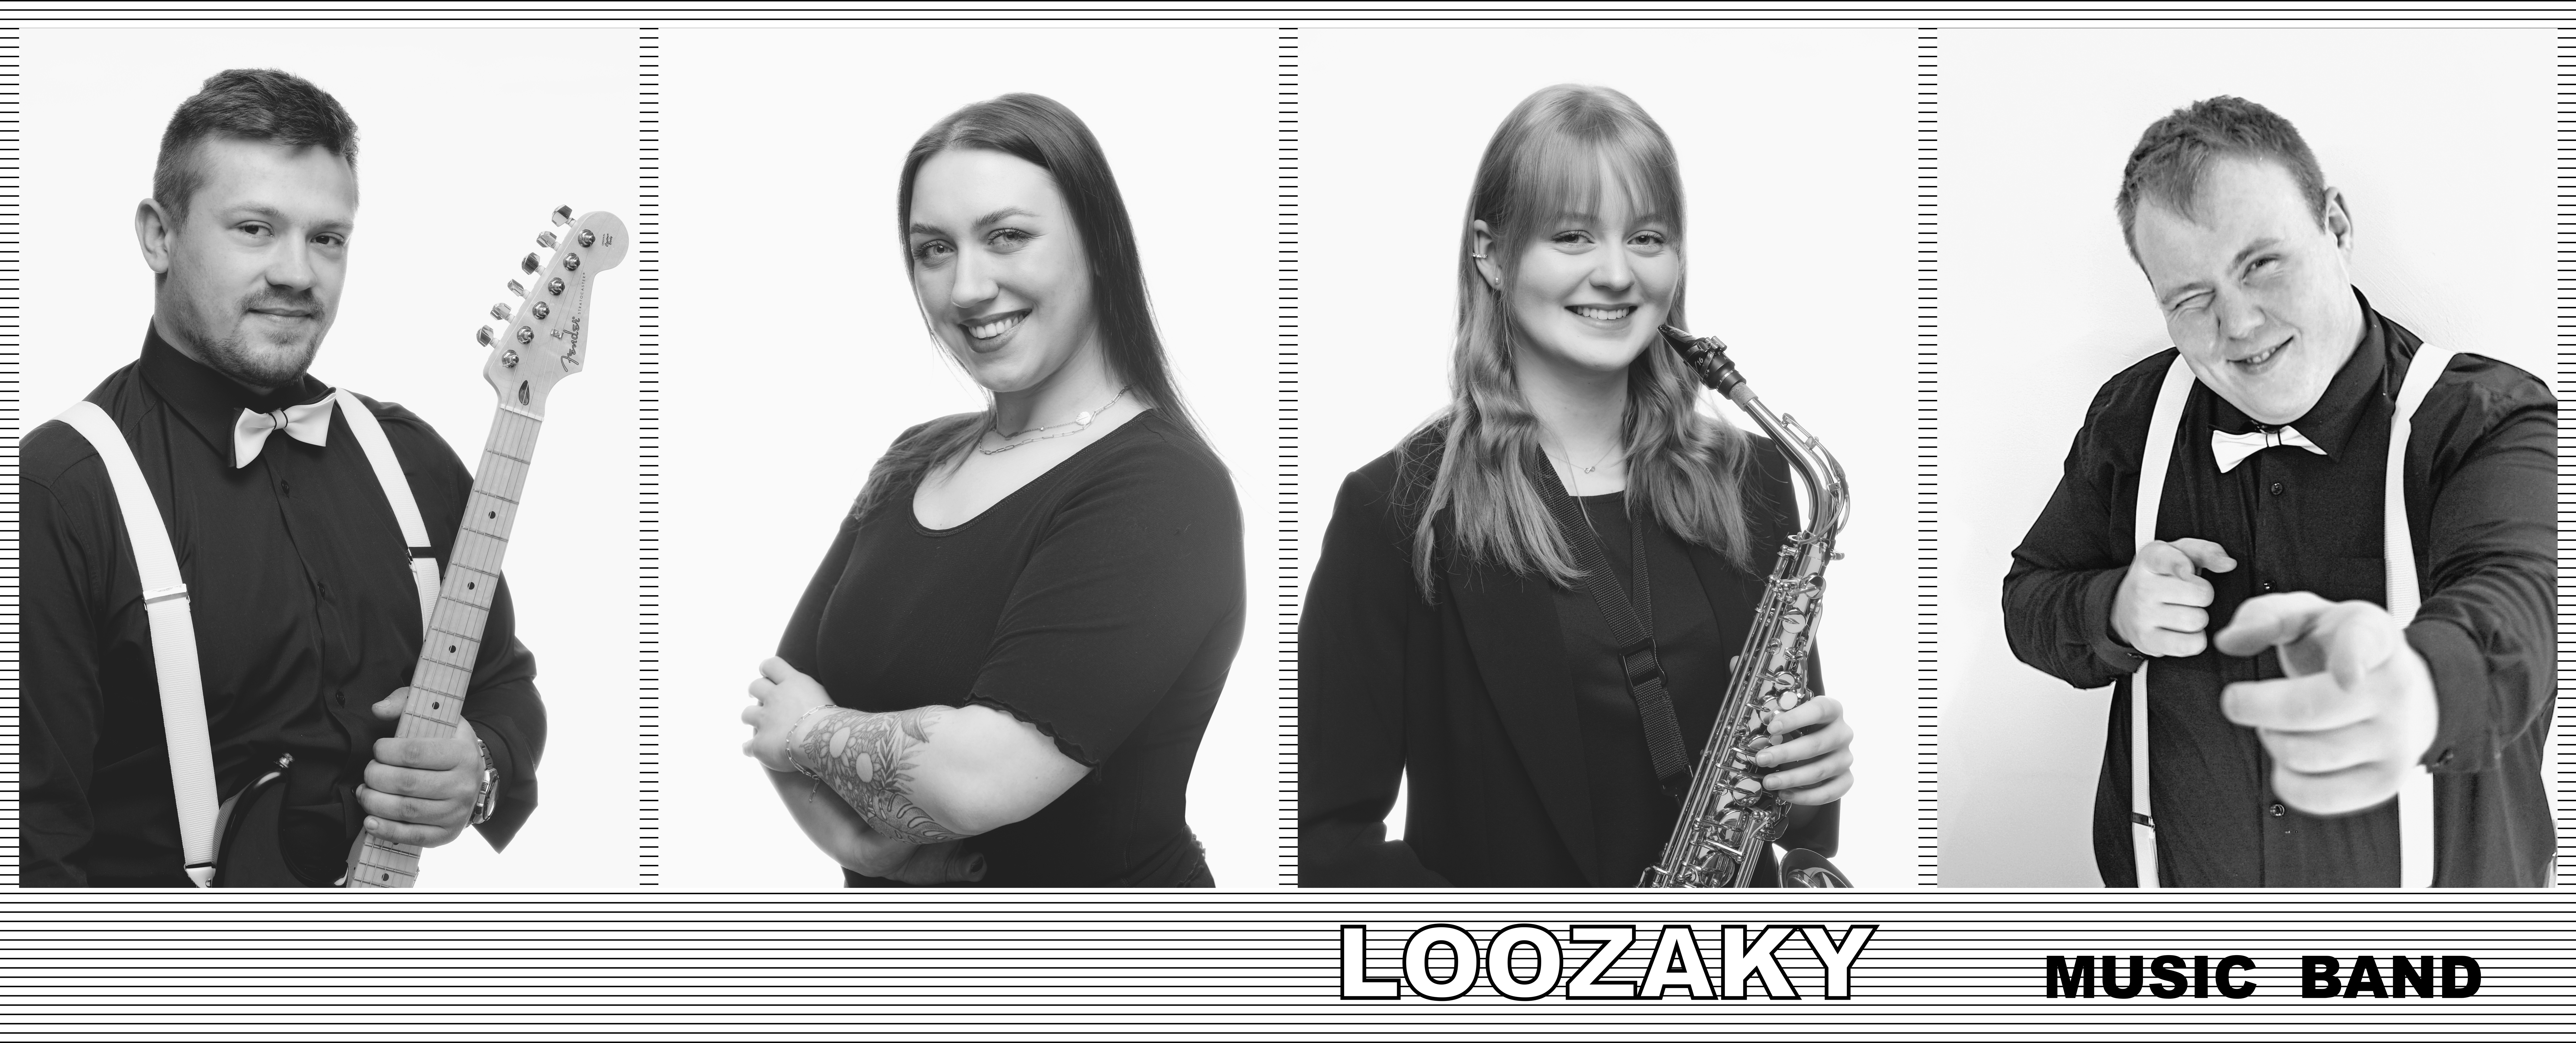 Loozaky Music Band